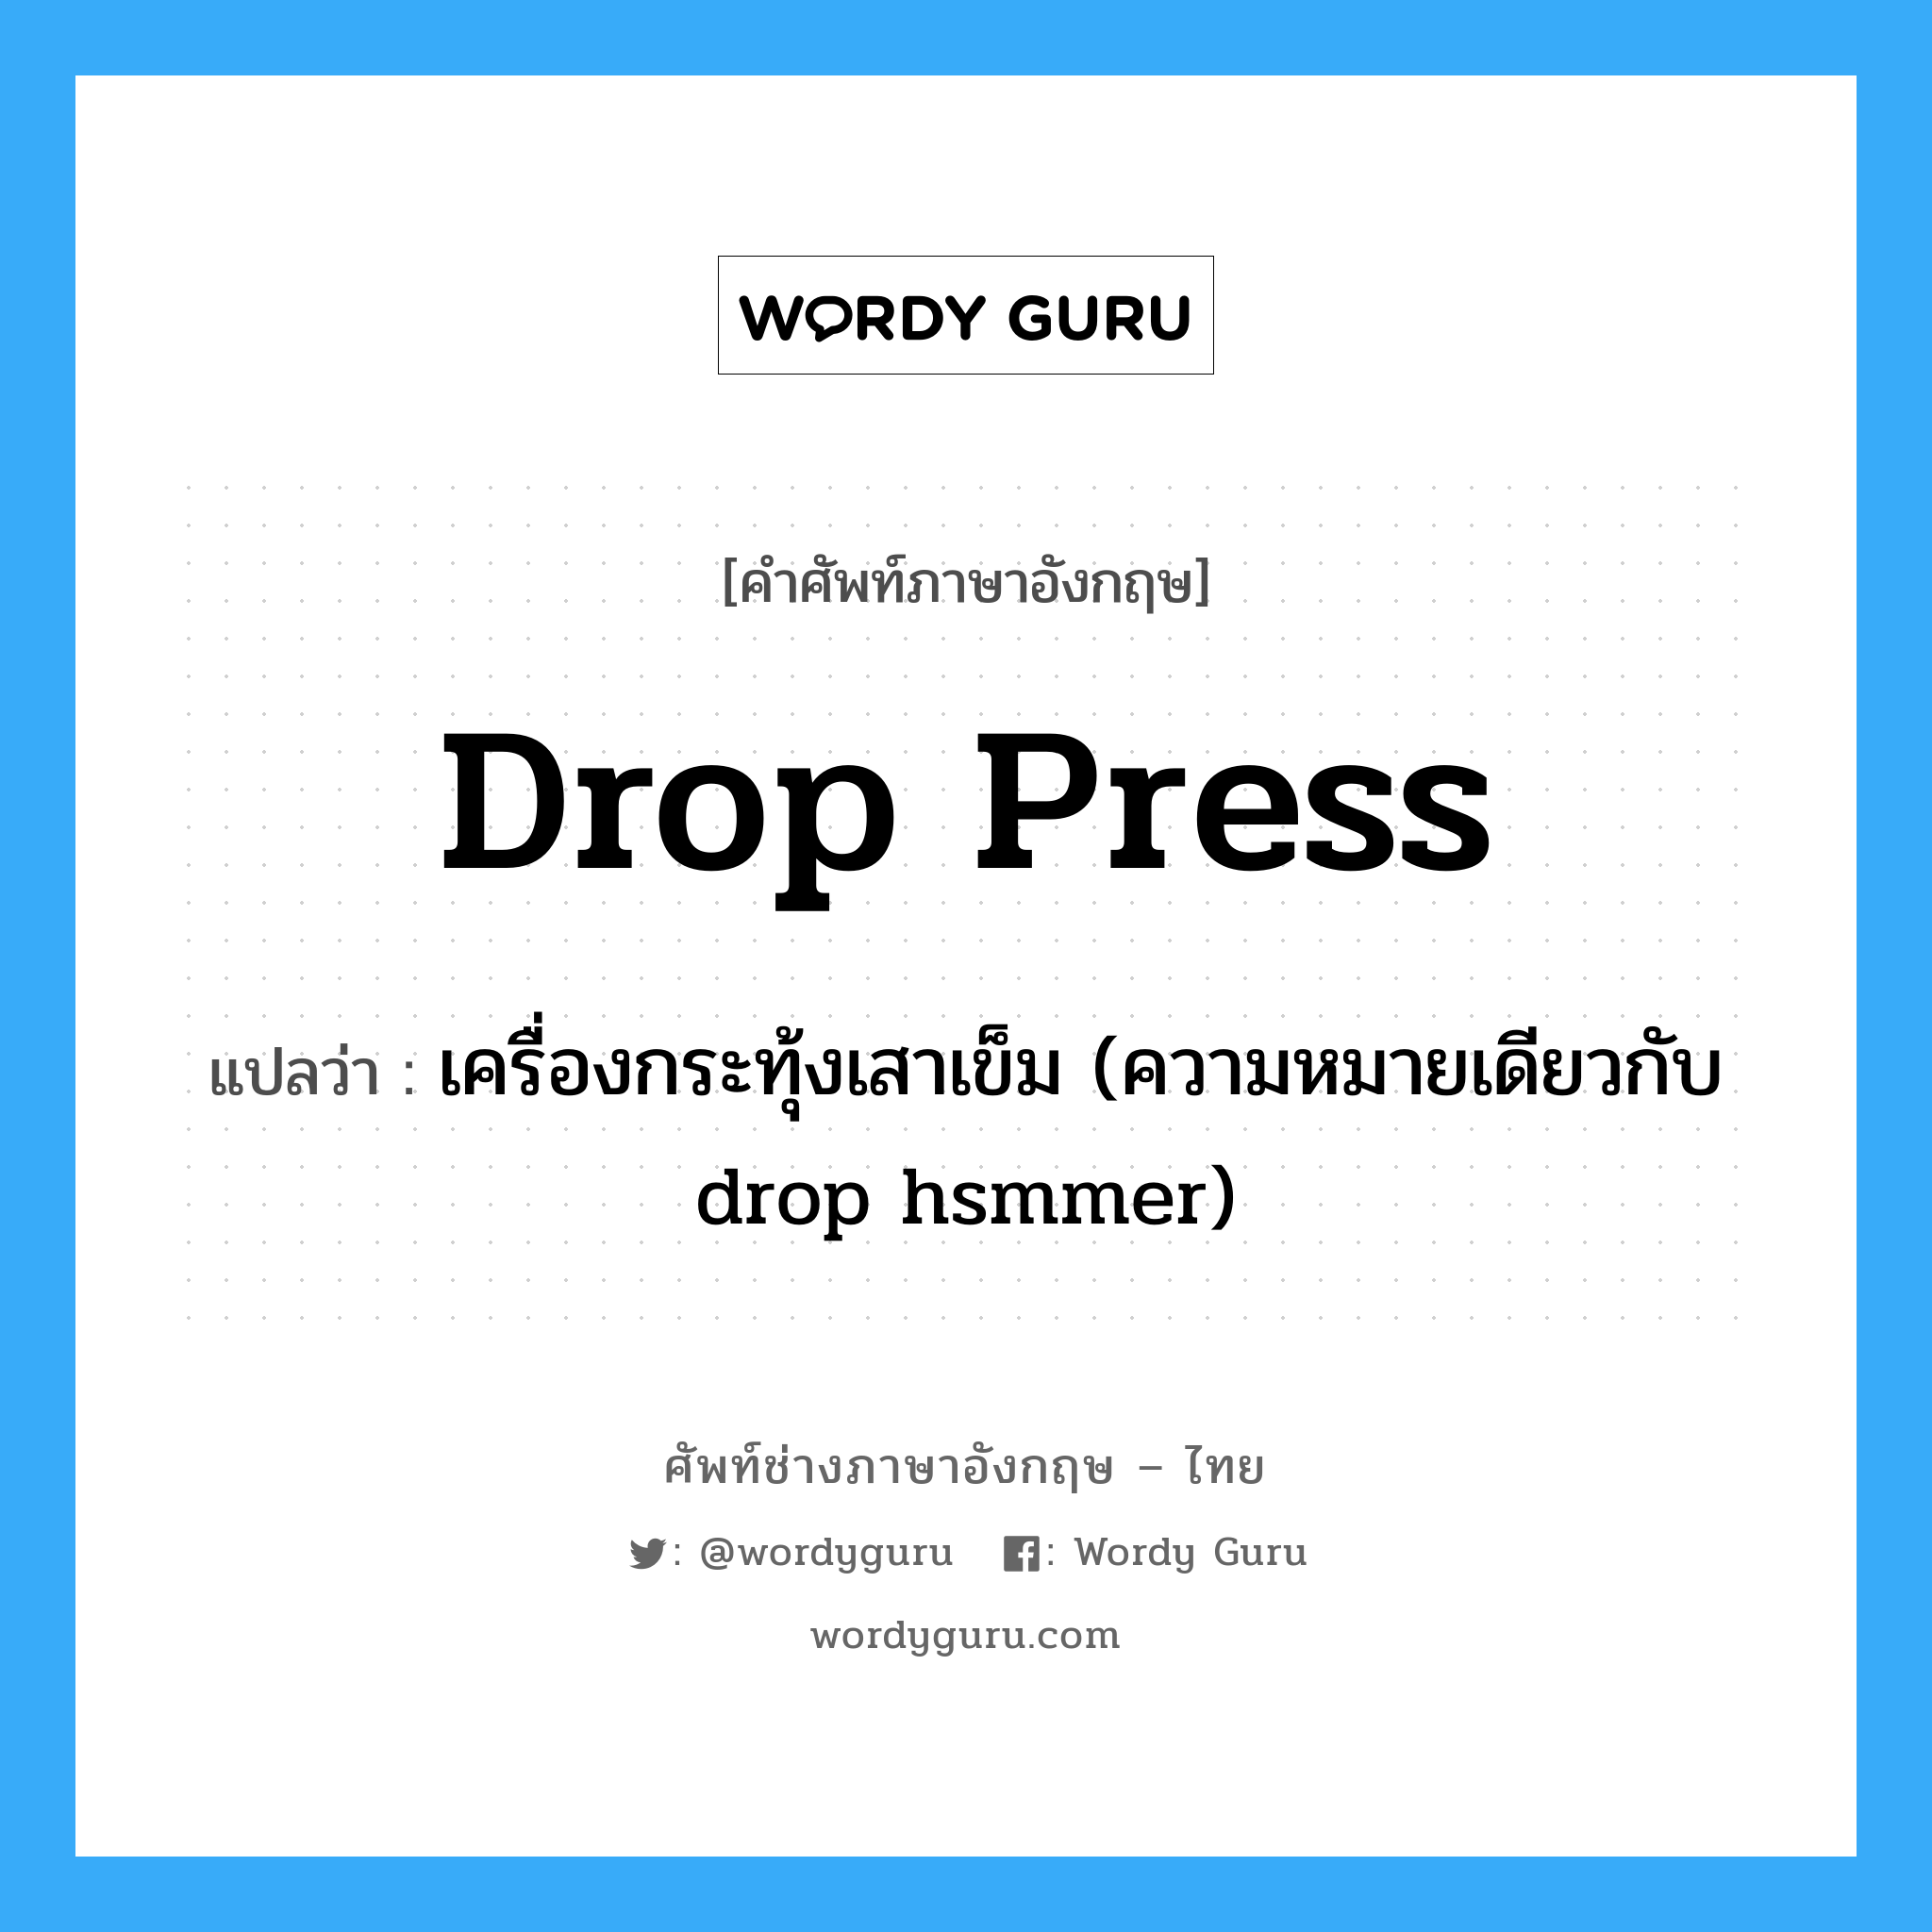 drop press แปลว่า?, คำศัพท์ช่างภาษาอังกฤษ - ไทย drop press คำศัพท์ภาษาอังกฤษ drop press แปลว่า เครื่องกระทุ้งเสาเข็ม (ความหมายเดียวกับ drop hsmmer)